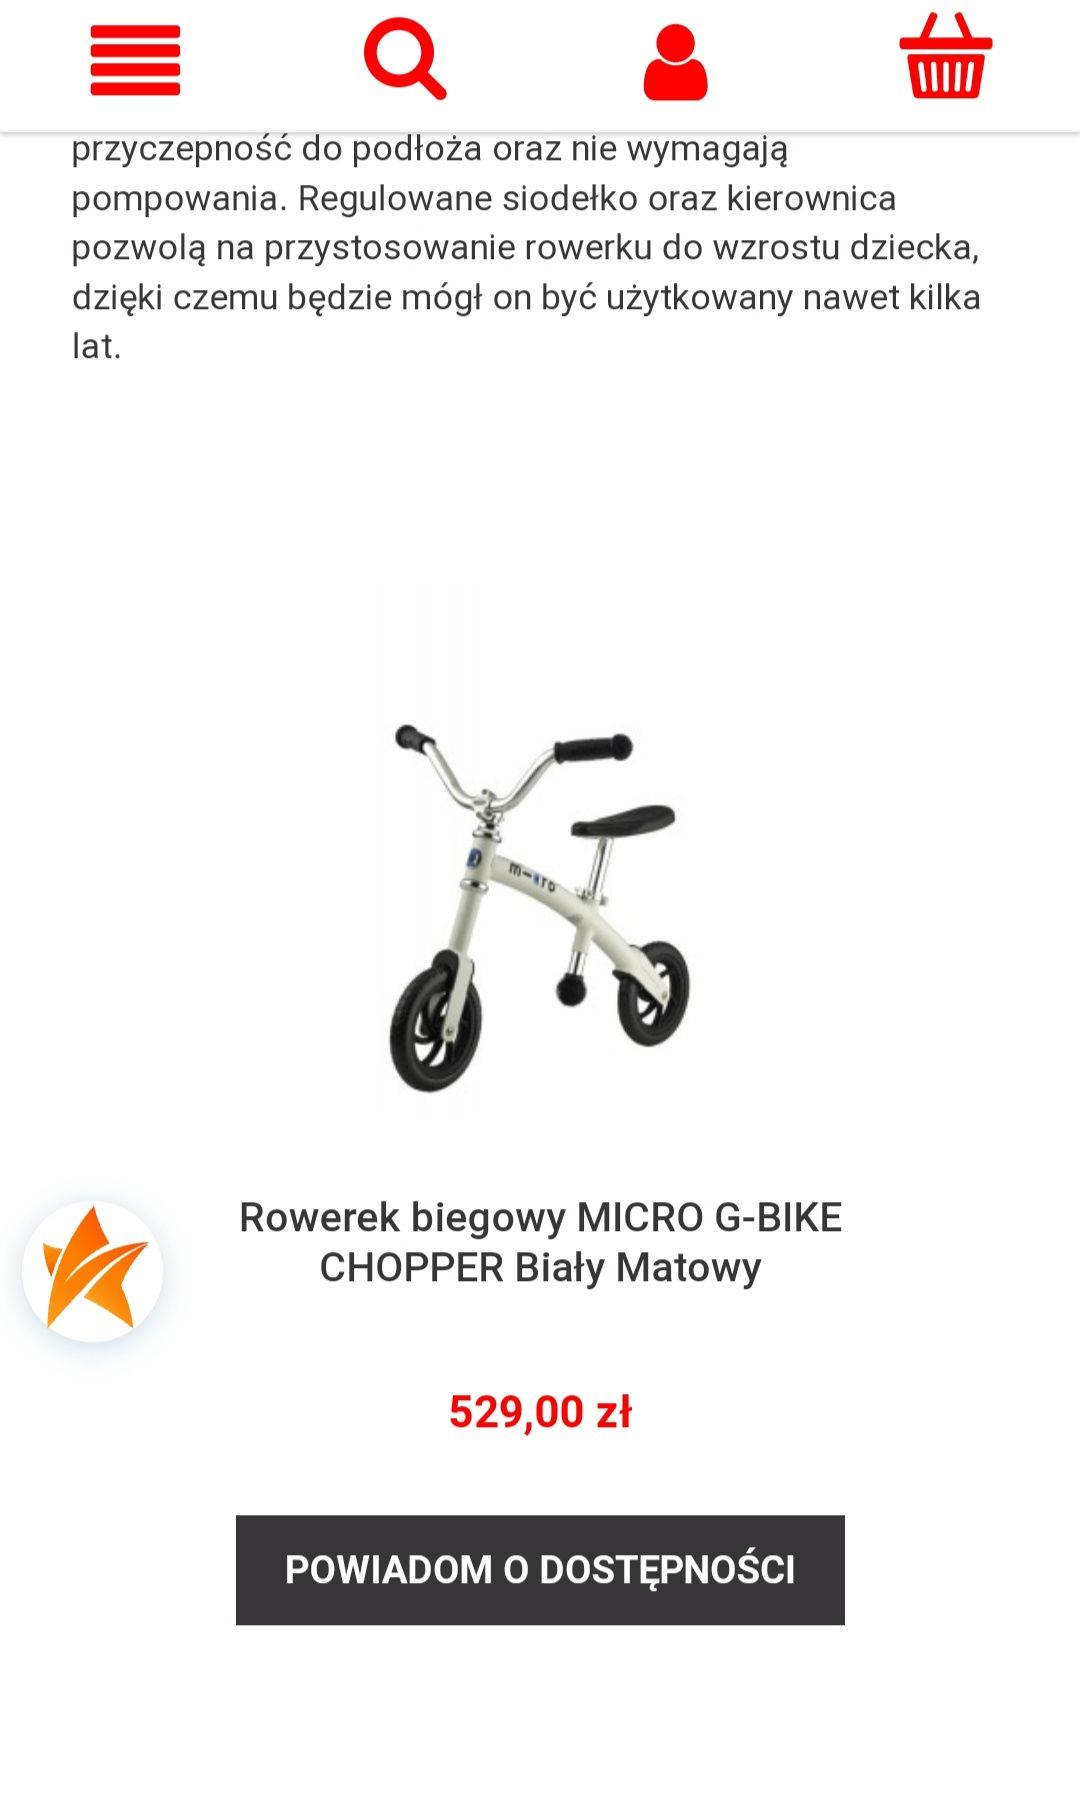 Rowerek biegowy 2-5 lat od Micro-G bike Chopper